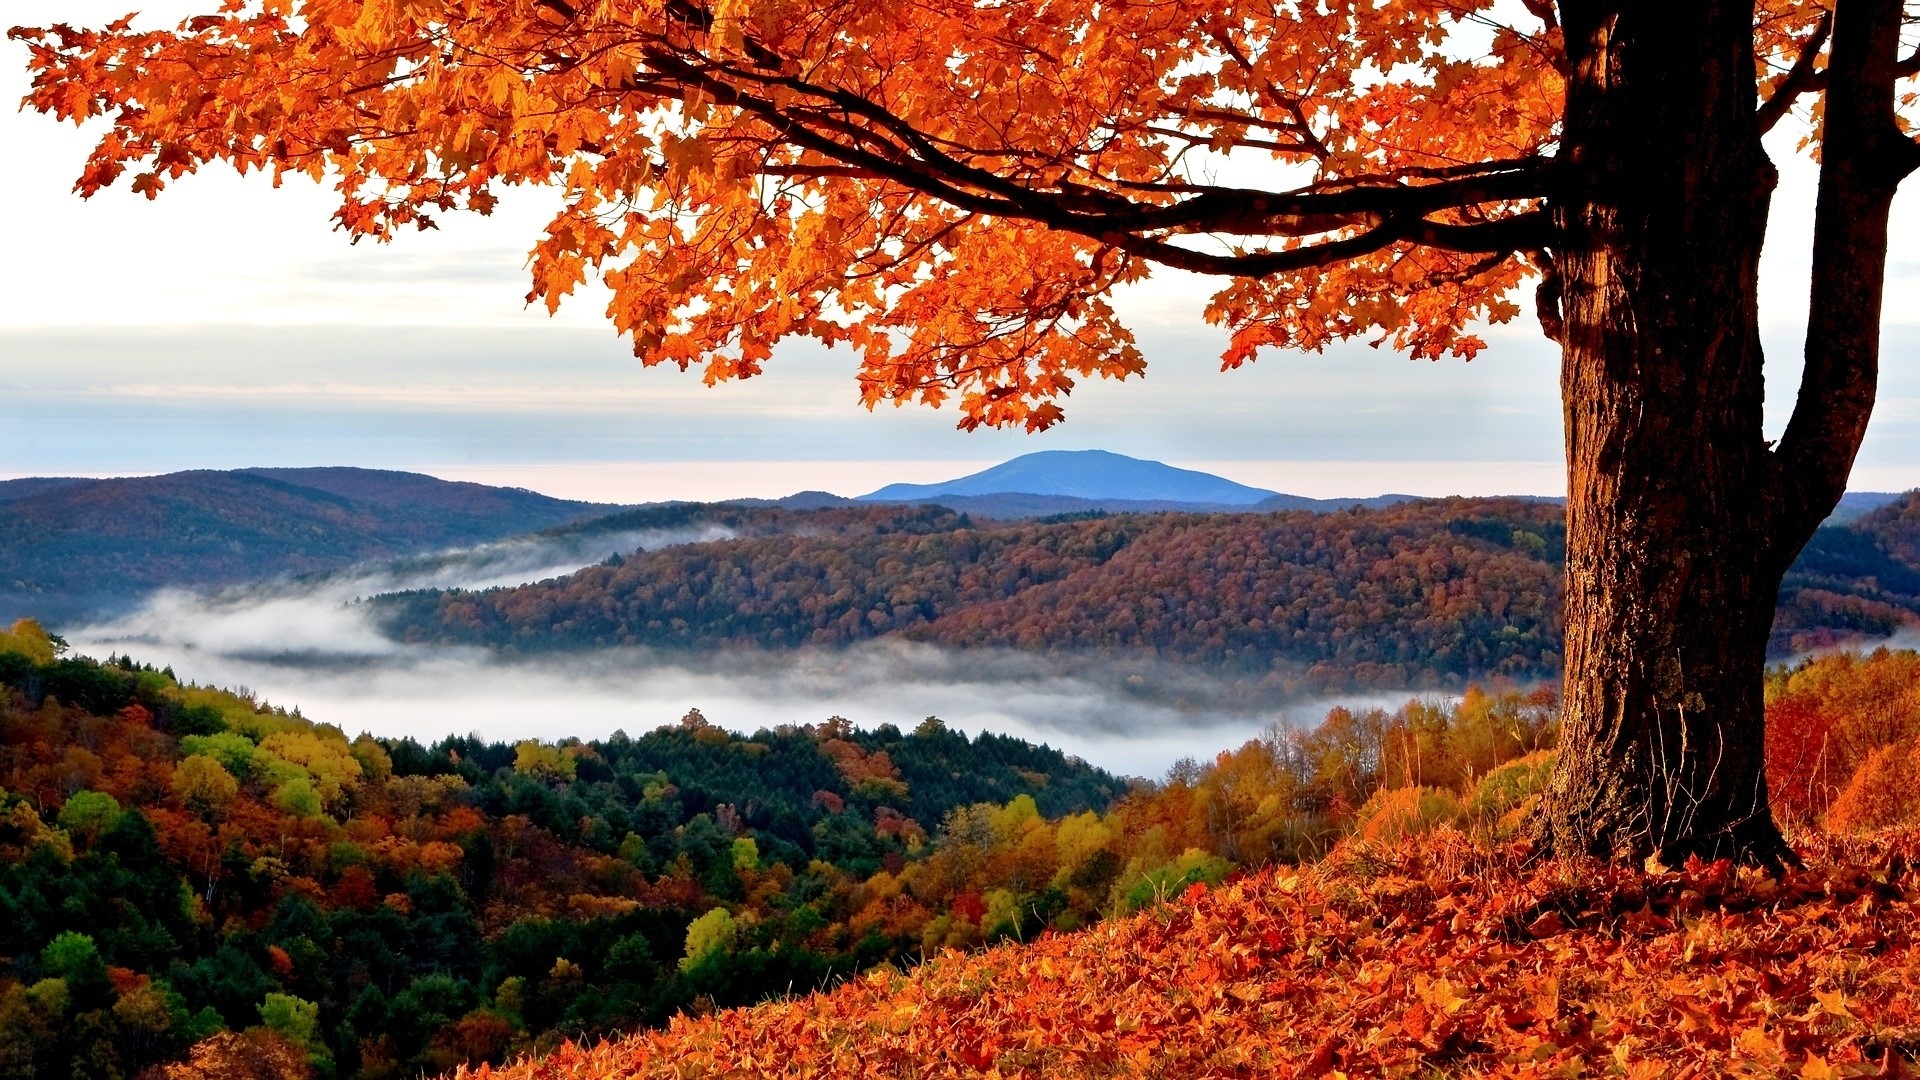 Hd autumn fall mountain scenery